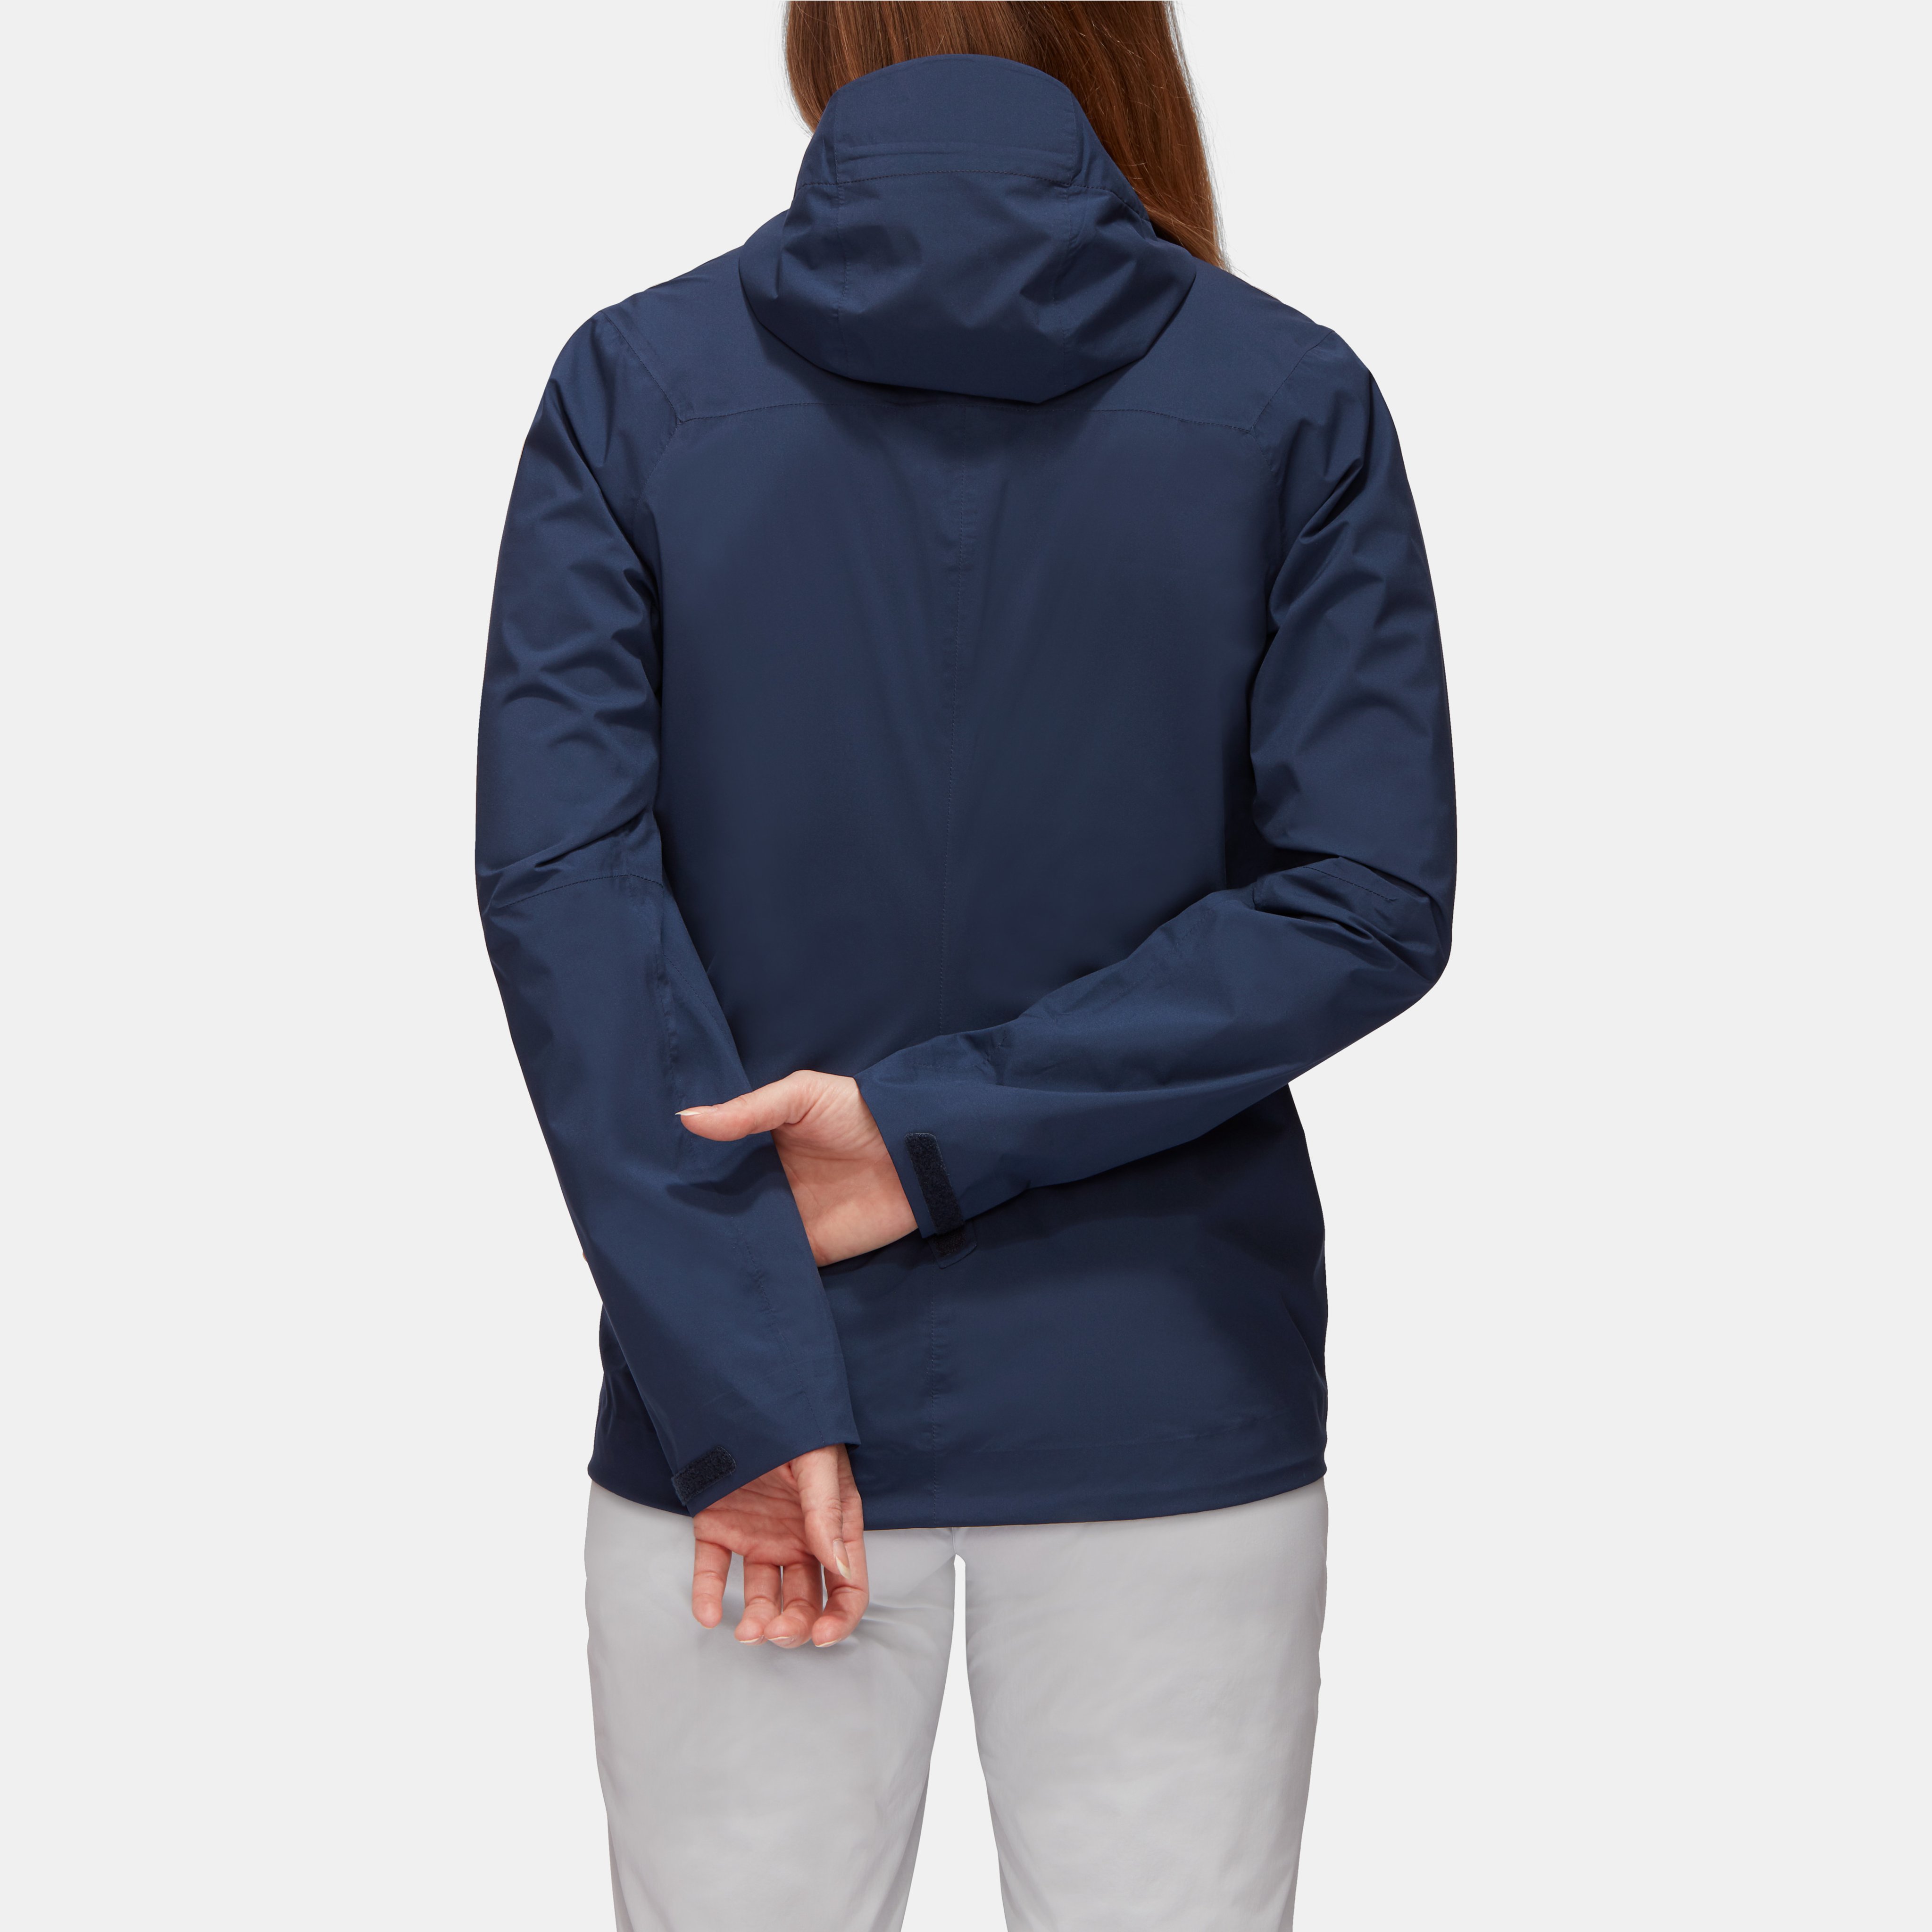 Albula HS Hooded Jacket Women product image